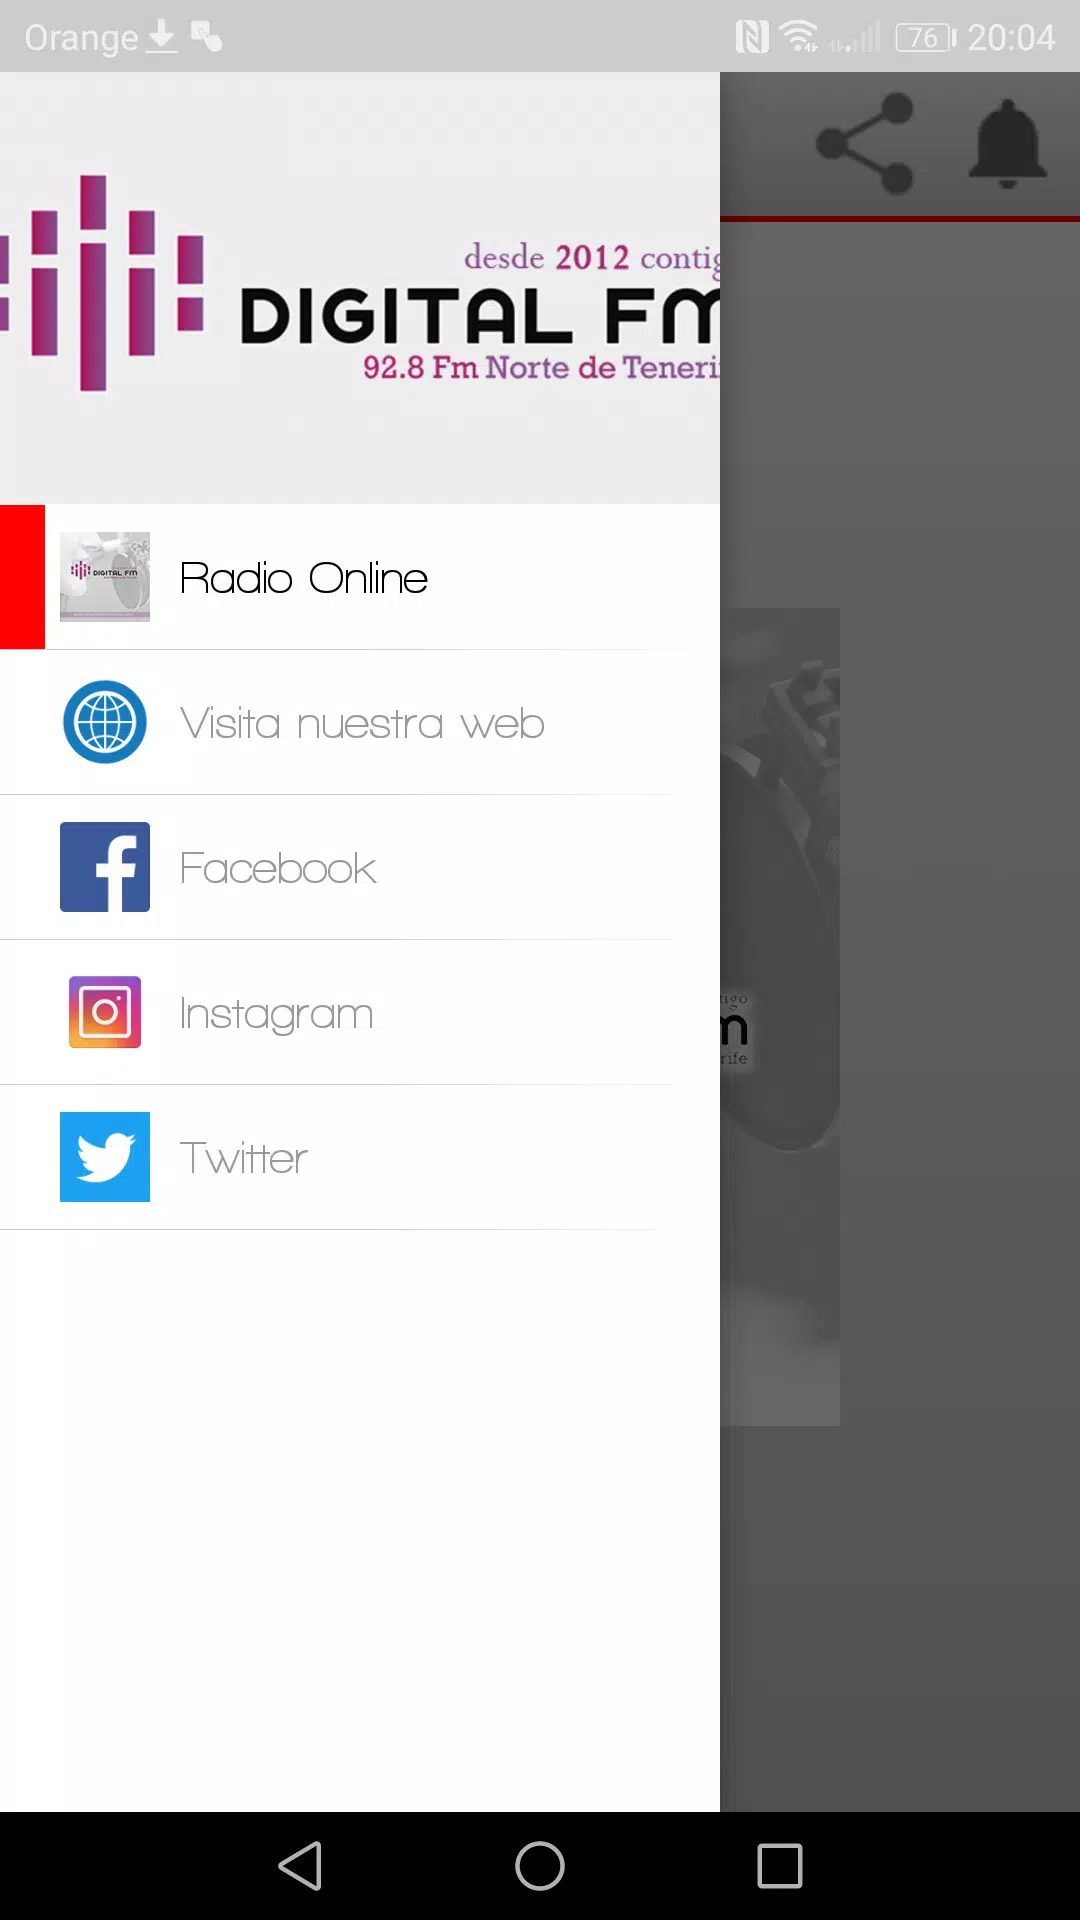 Digital Fm Radio APK voor Android Download